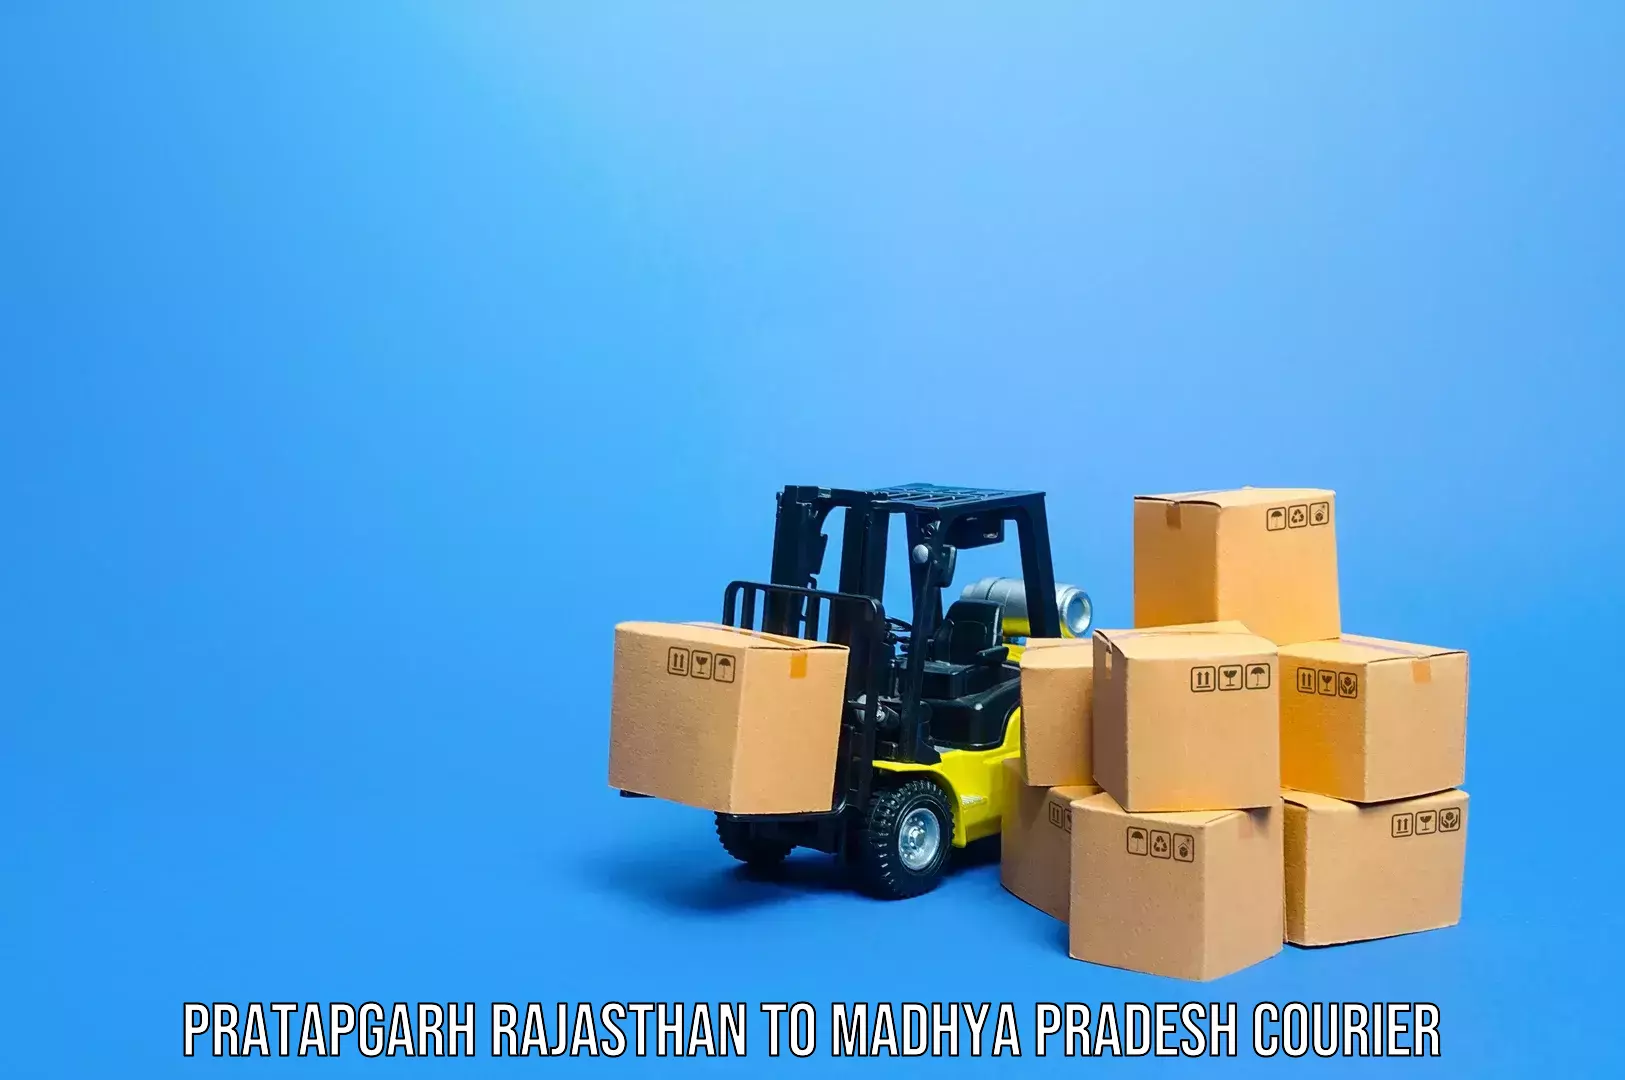 Luggage transfer service Pratapgarh Rajasthan to Sausar